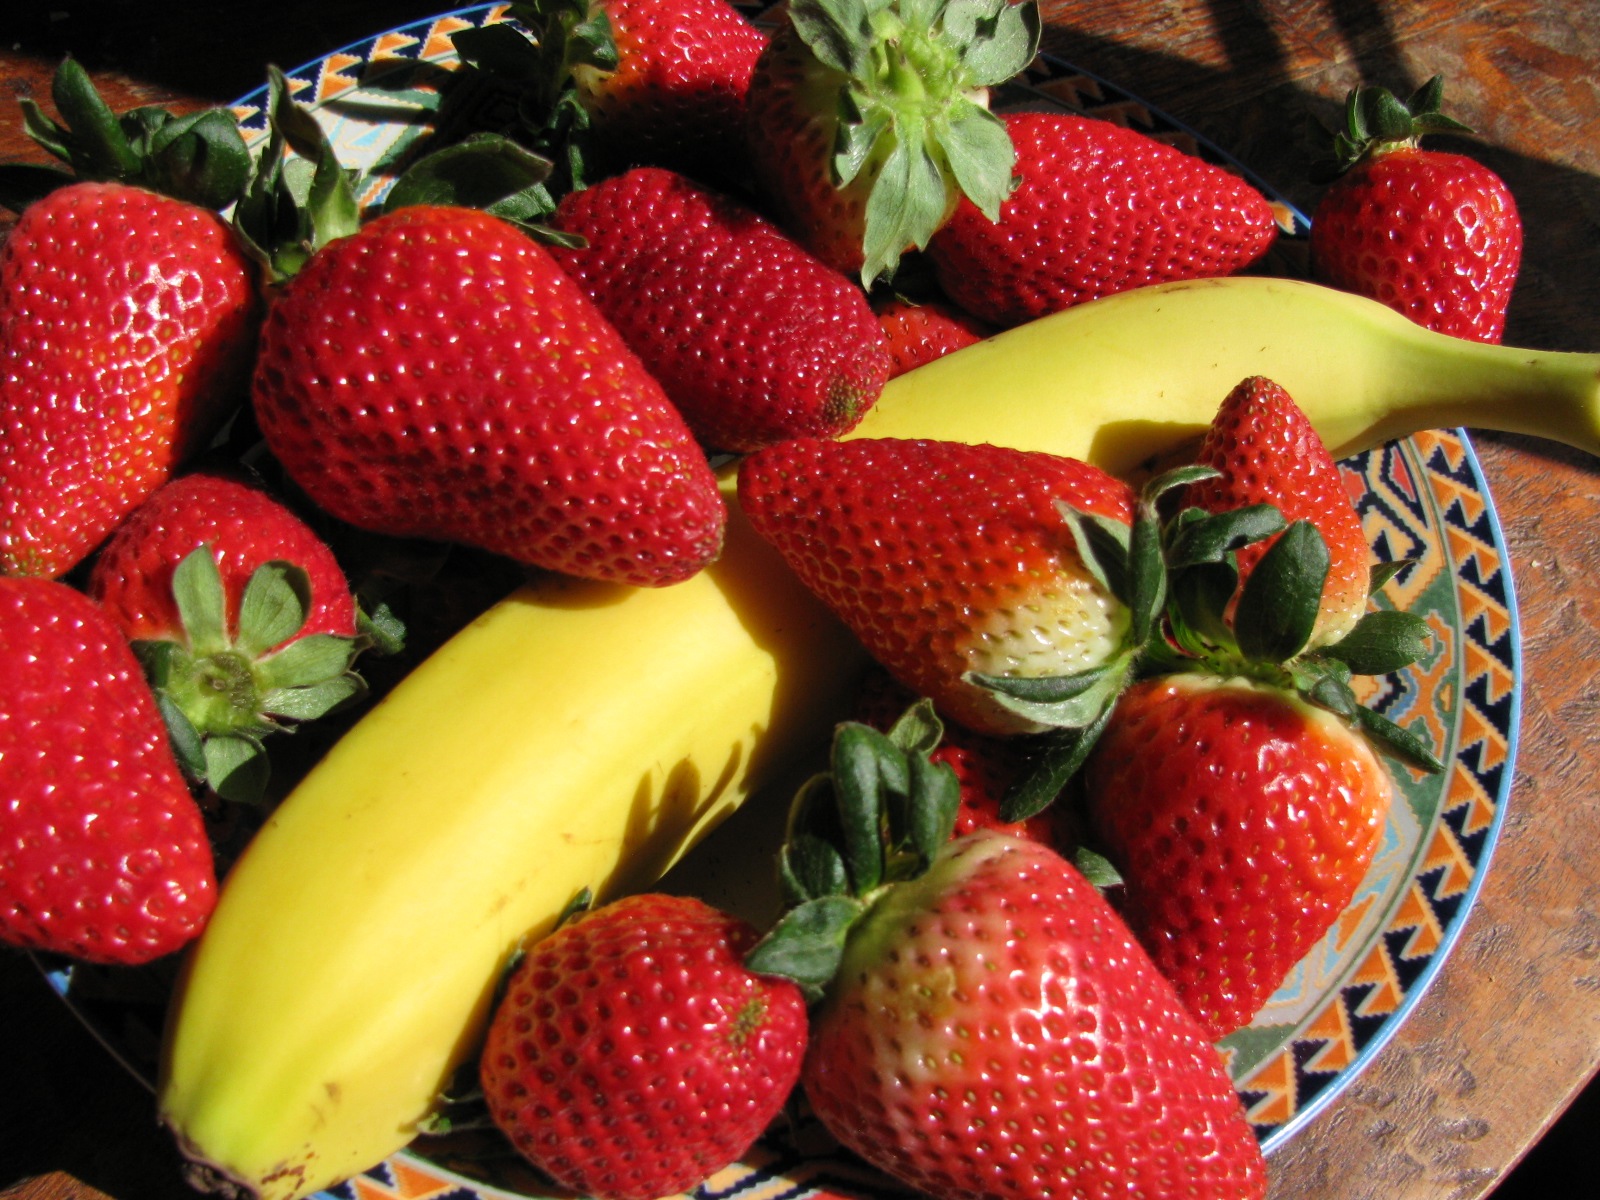 Banana and Strawberries